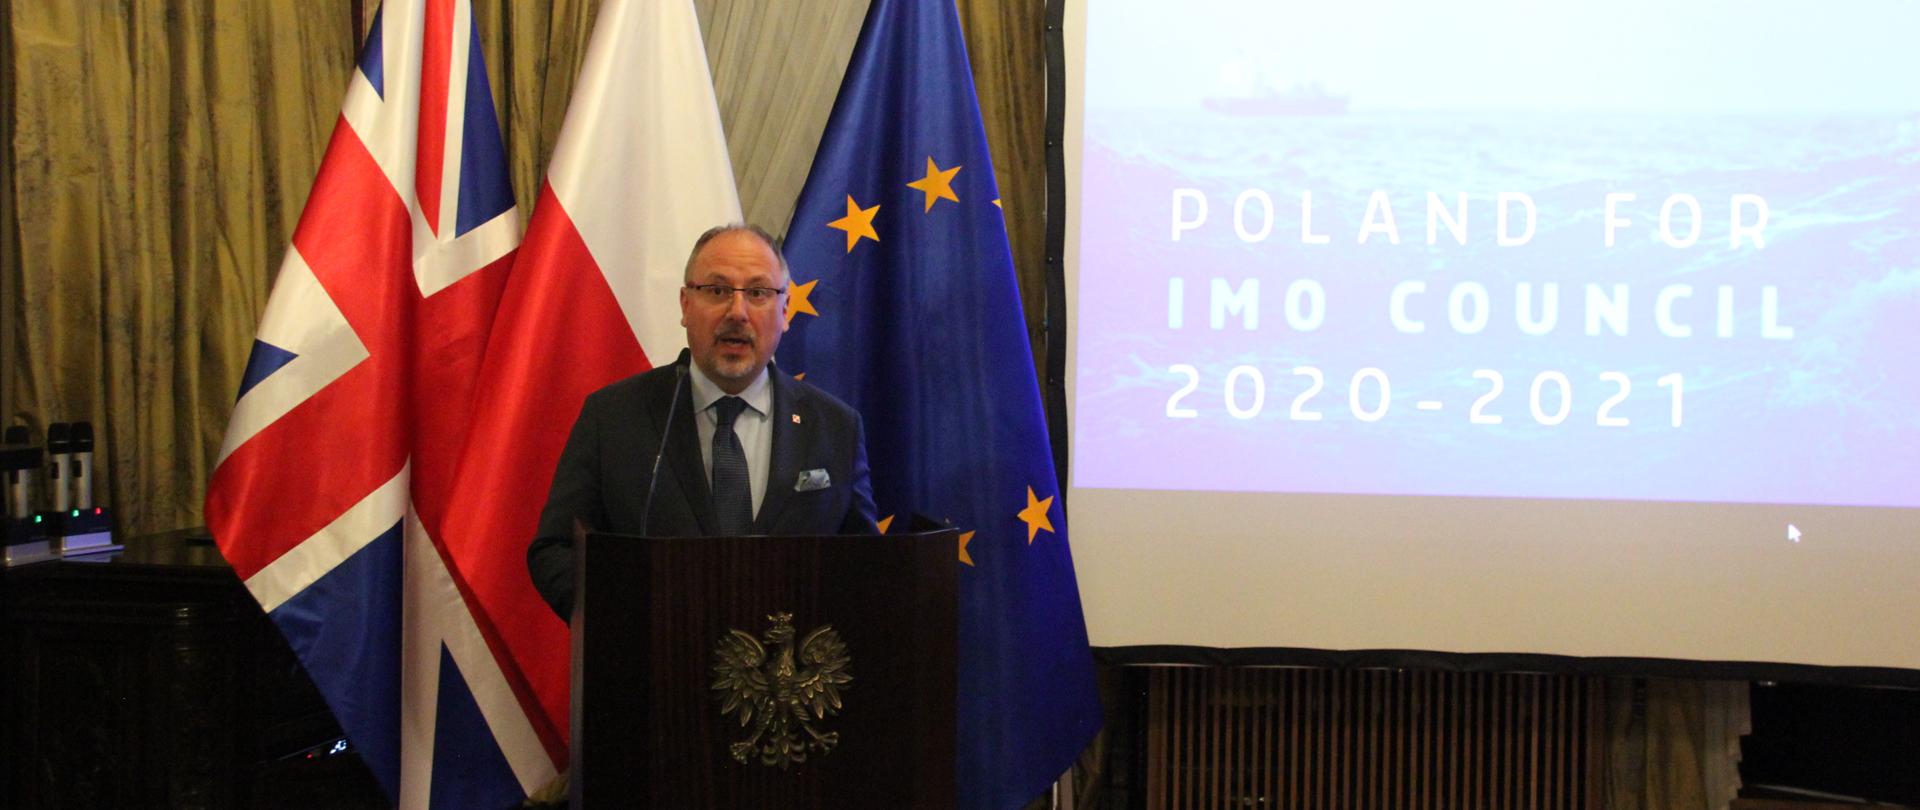 Poland for IMO Council